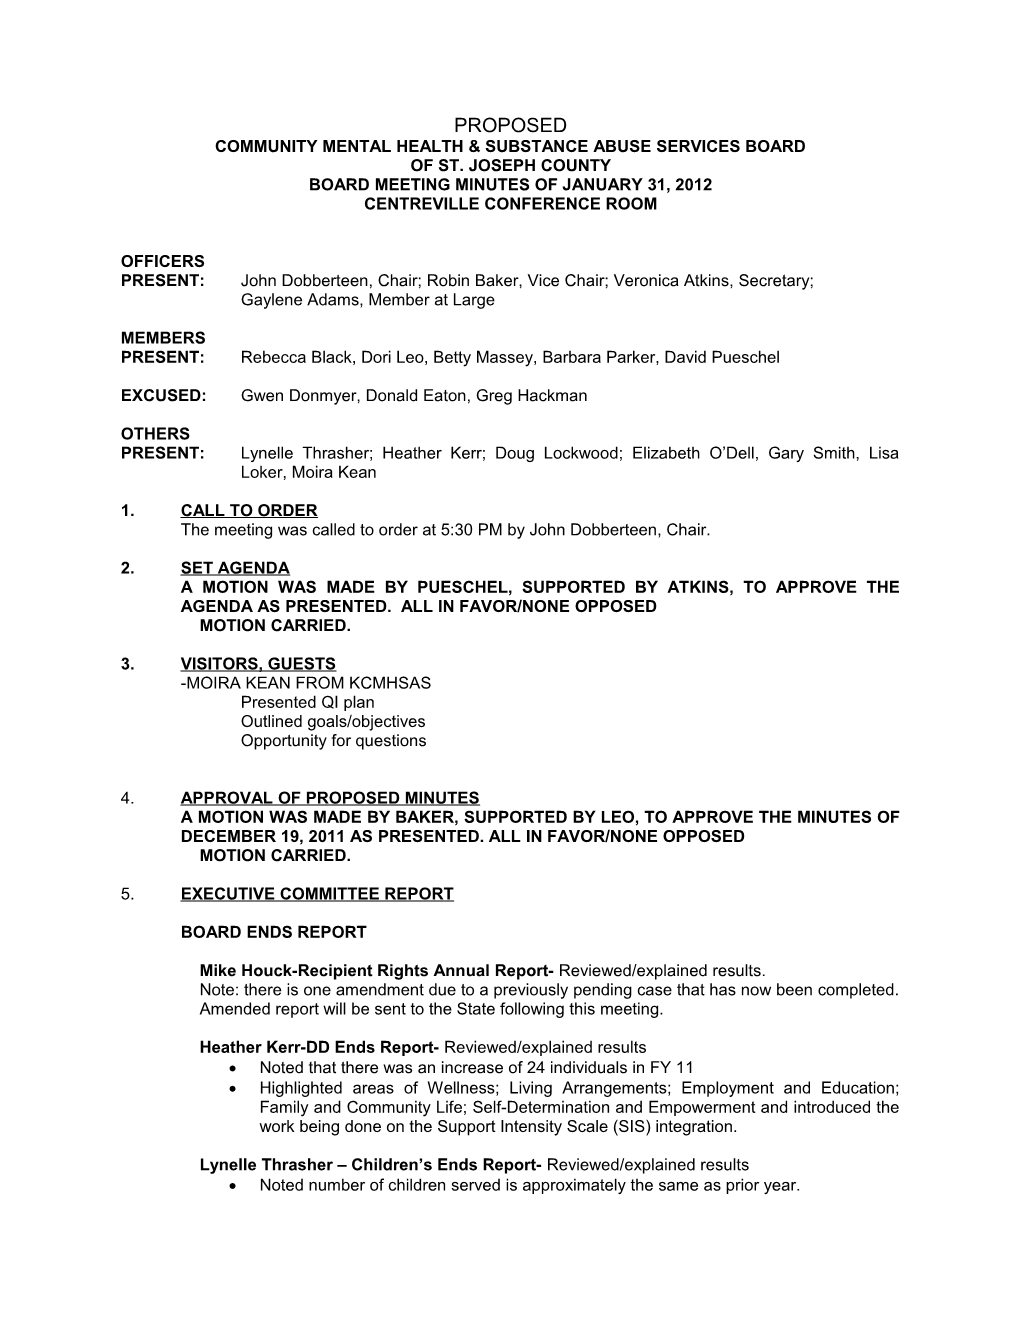 CMHSAS-SJC Board Meeting Minutes